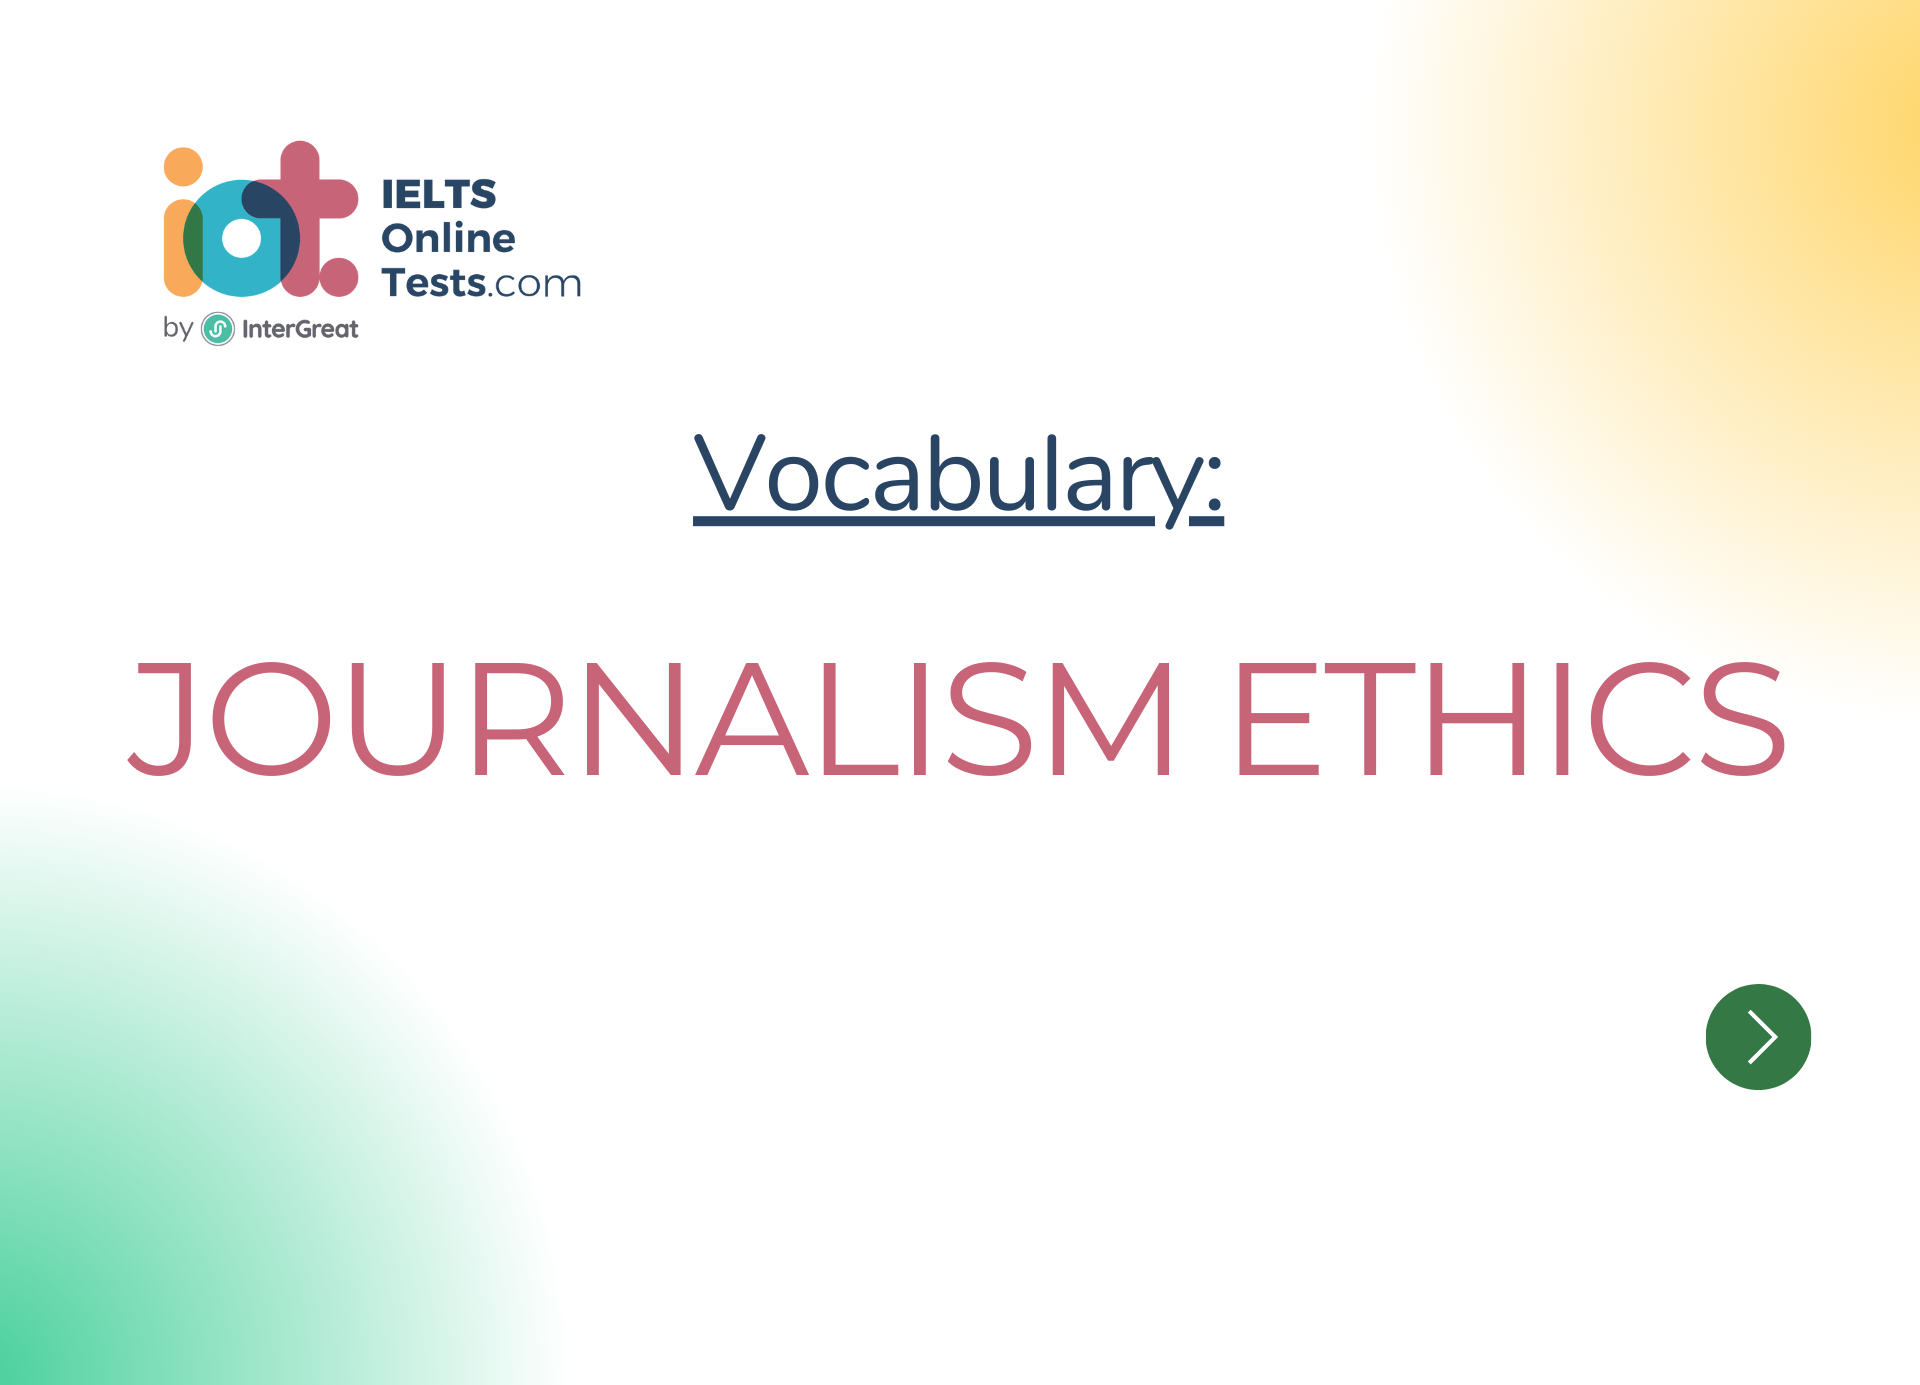 Đạo đức nghề làm báo chí (Journalism ethics)